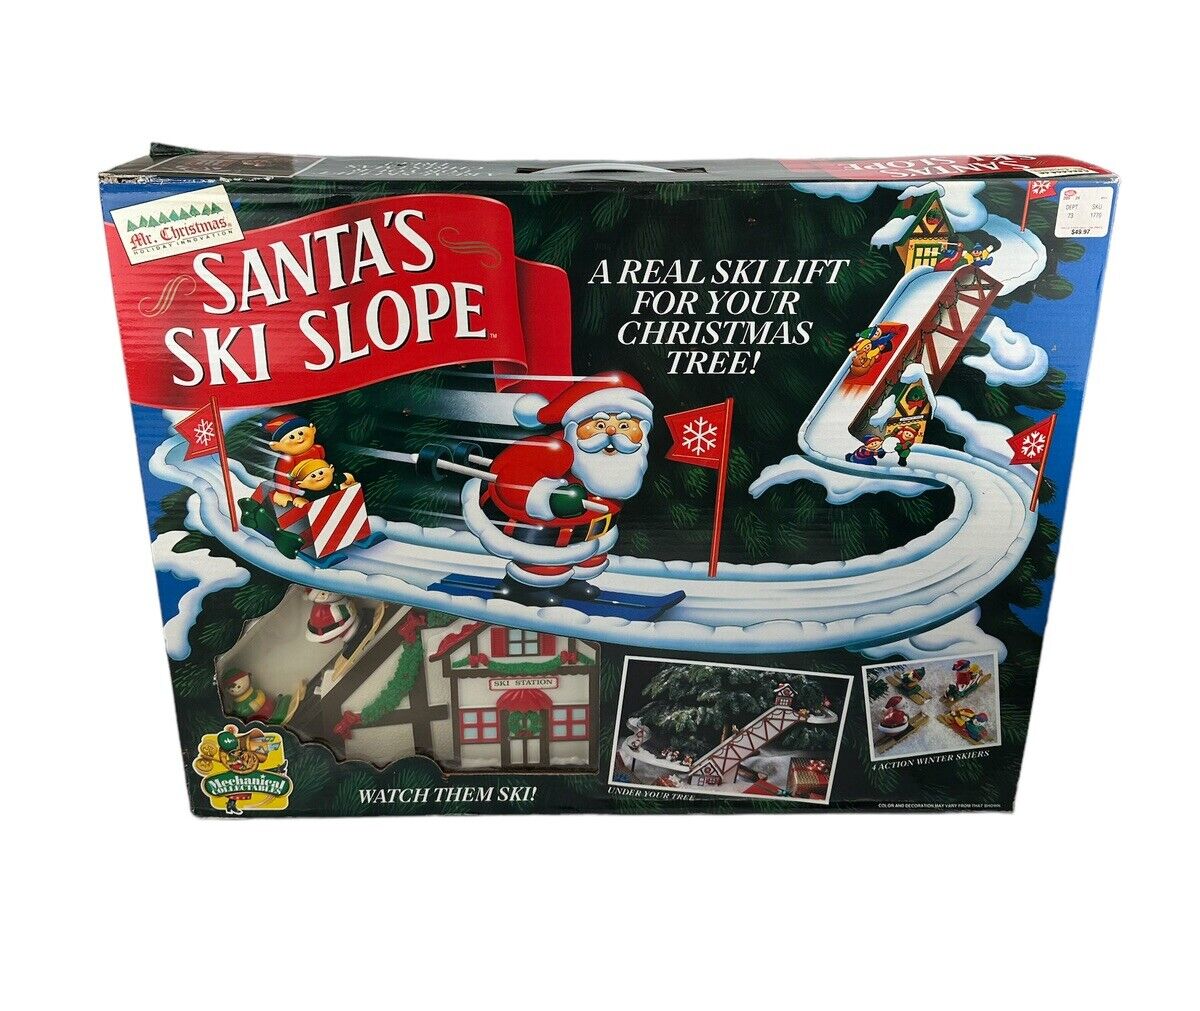 Vintage Mr. Christmas Santa's Ski Slope Ski Lift Ski Slope Toy In Sealed Box